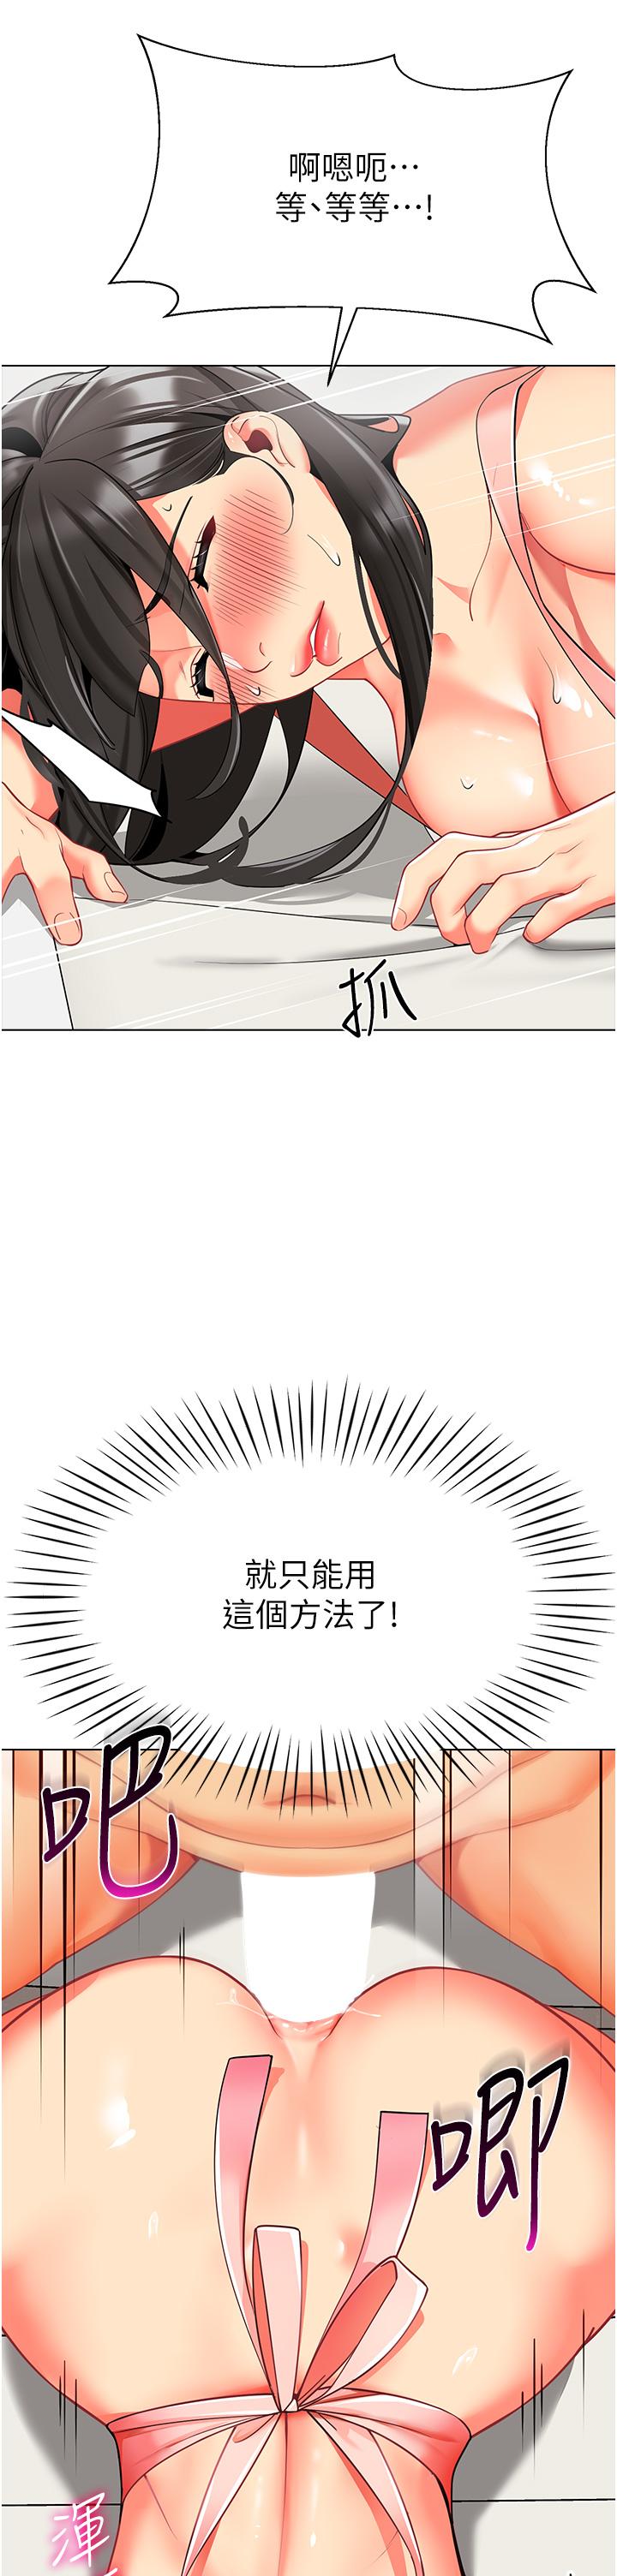 韩国污漫画 幼兒園老師們 第10话-裸体围裙的诱惑 27